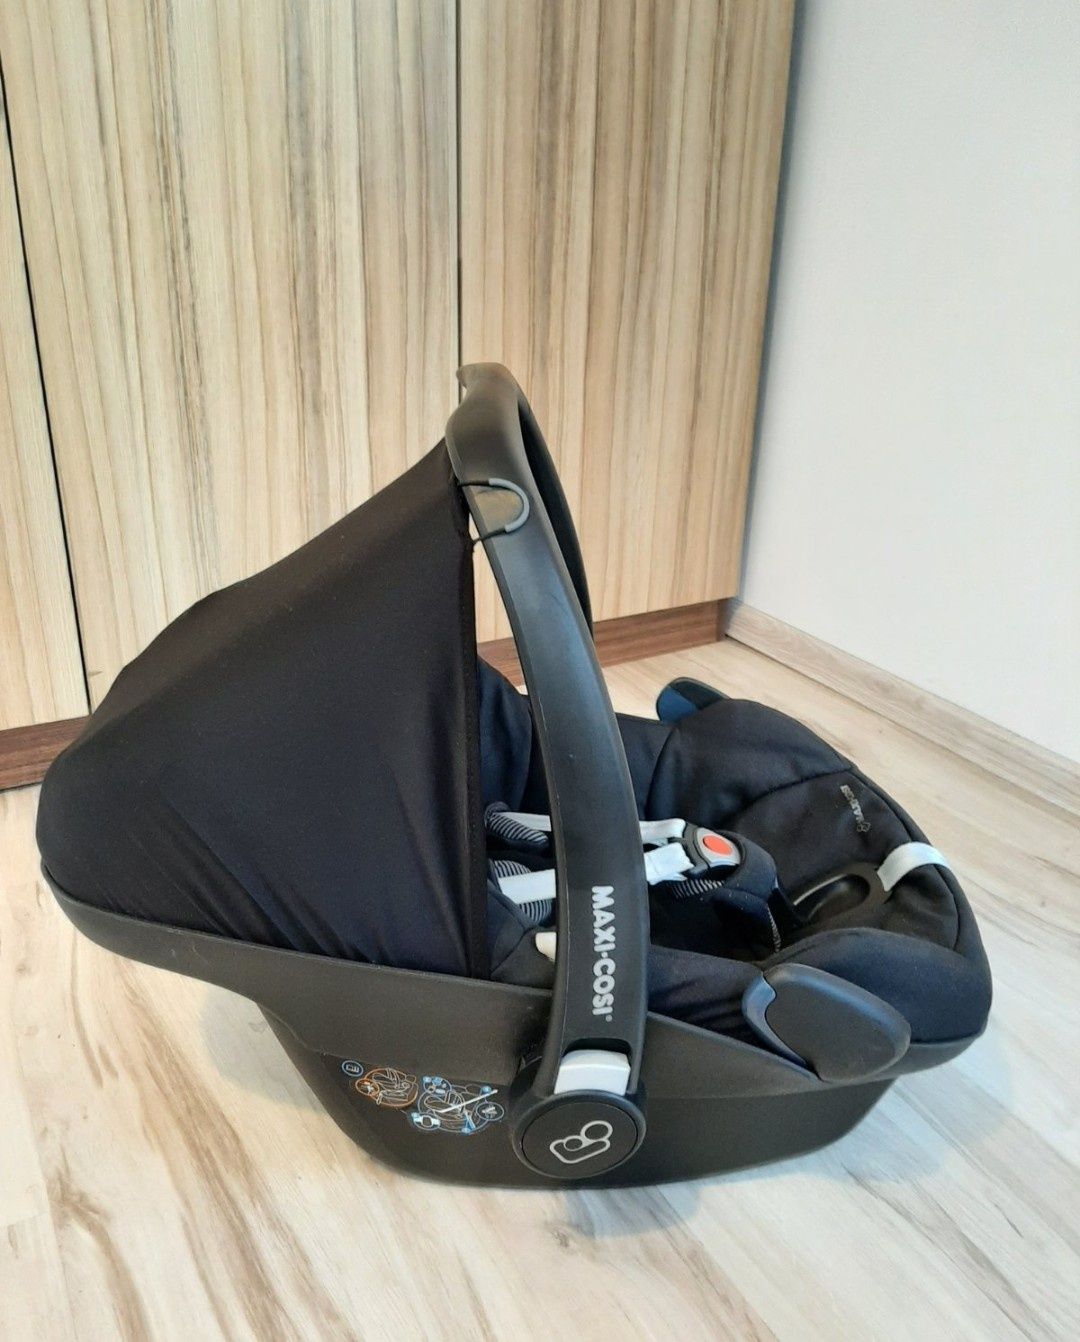 Бебешко столче за кола Maxi Cosi Pebble